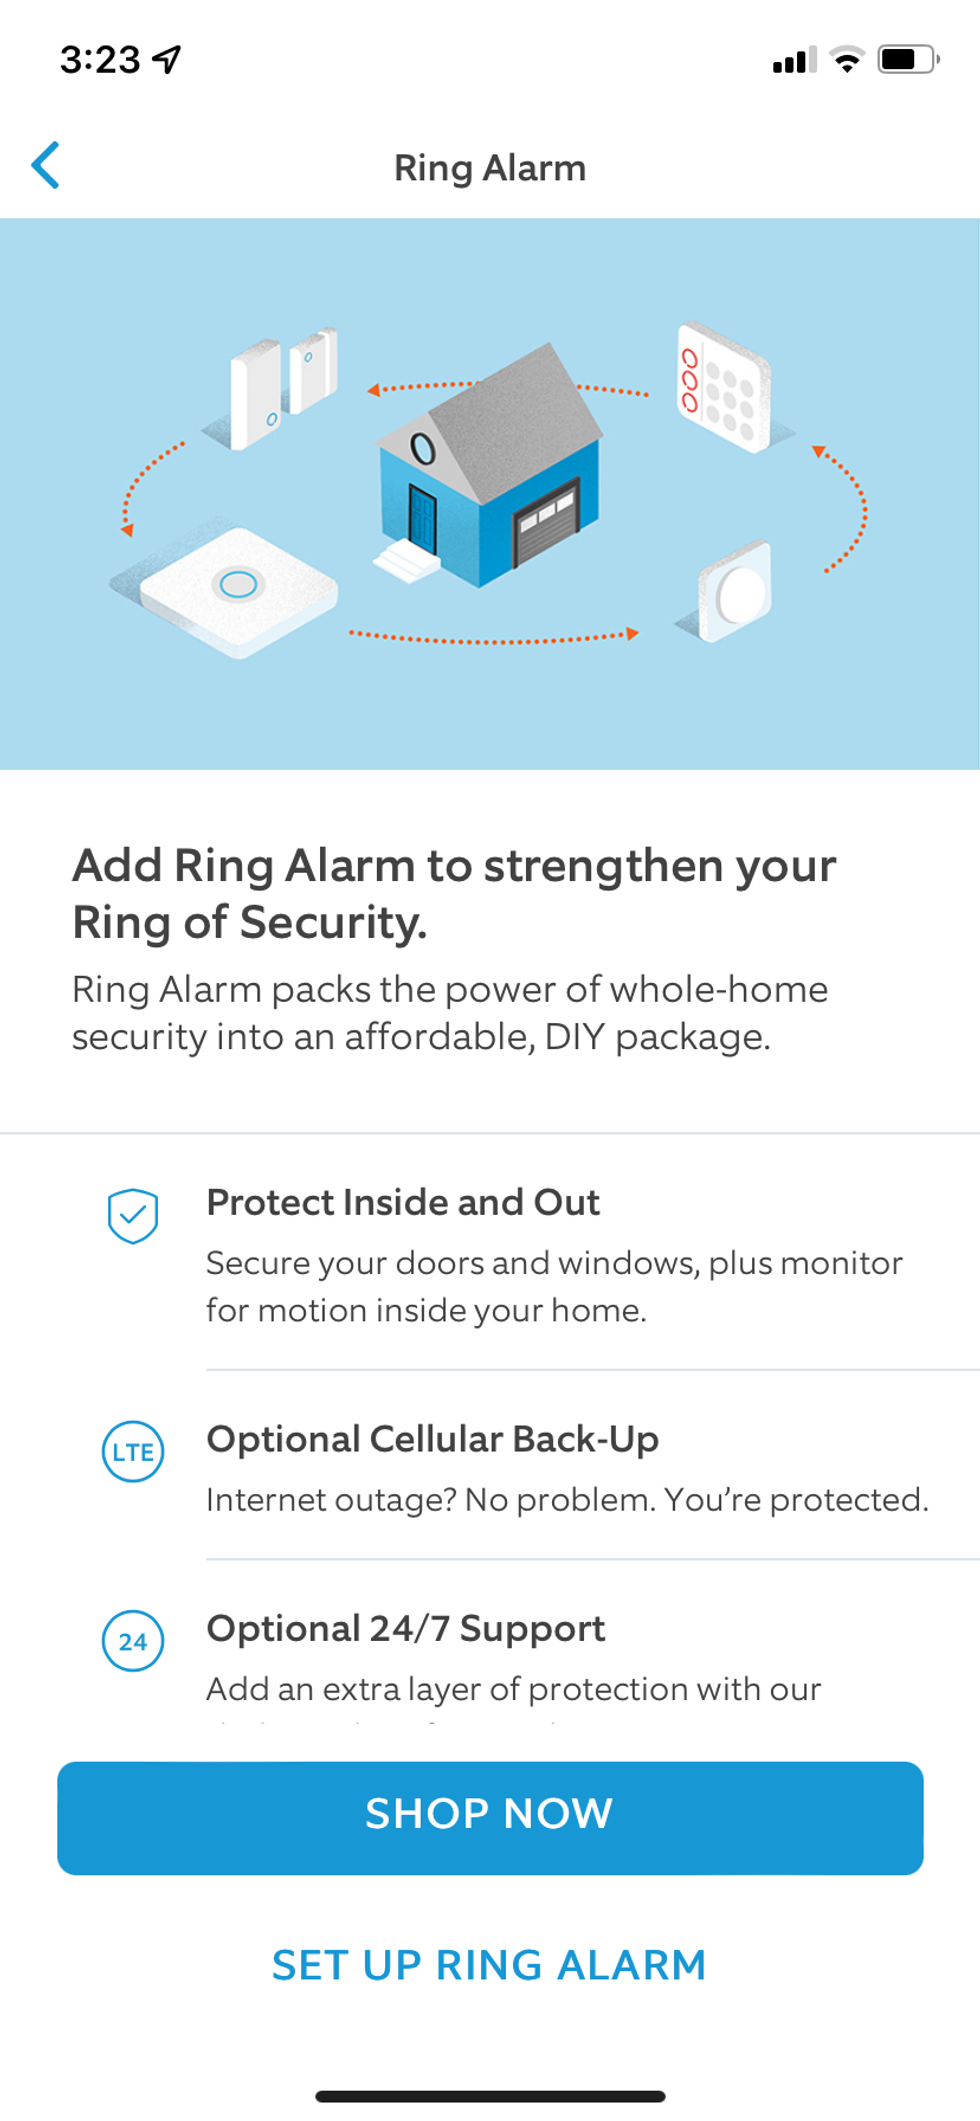 Captura de tela sobre como configurar o Ring Alarm Pro no aplicativo Ring